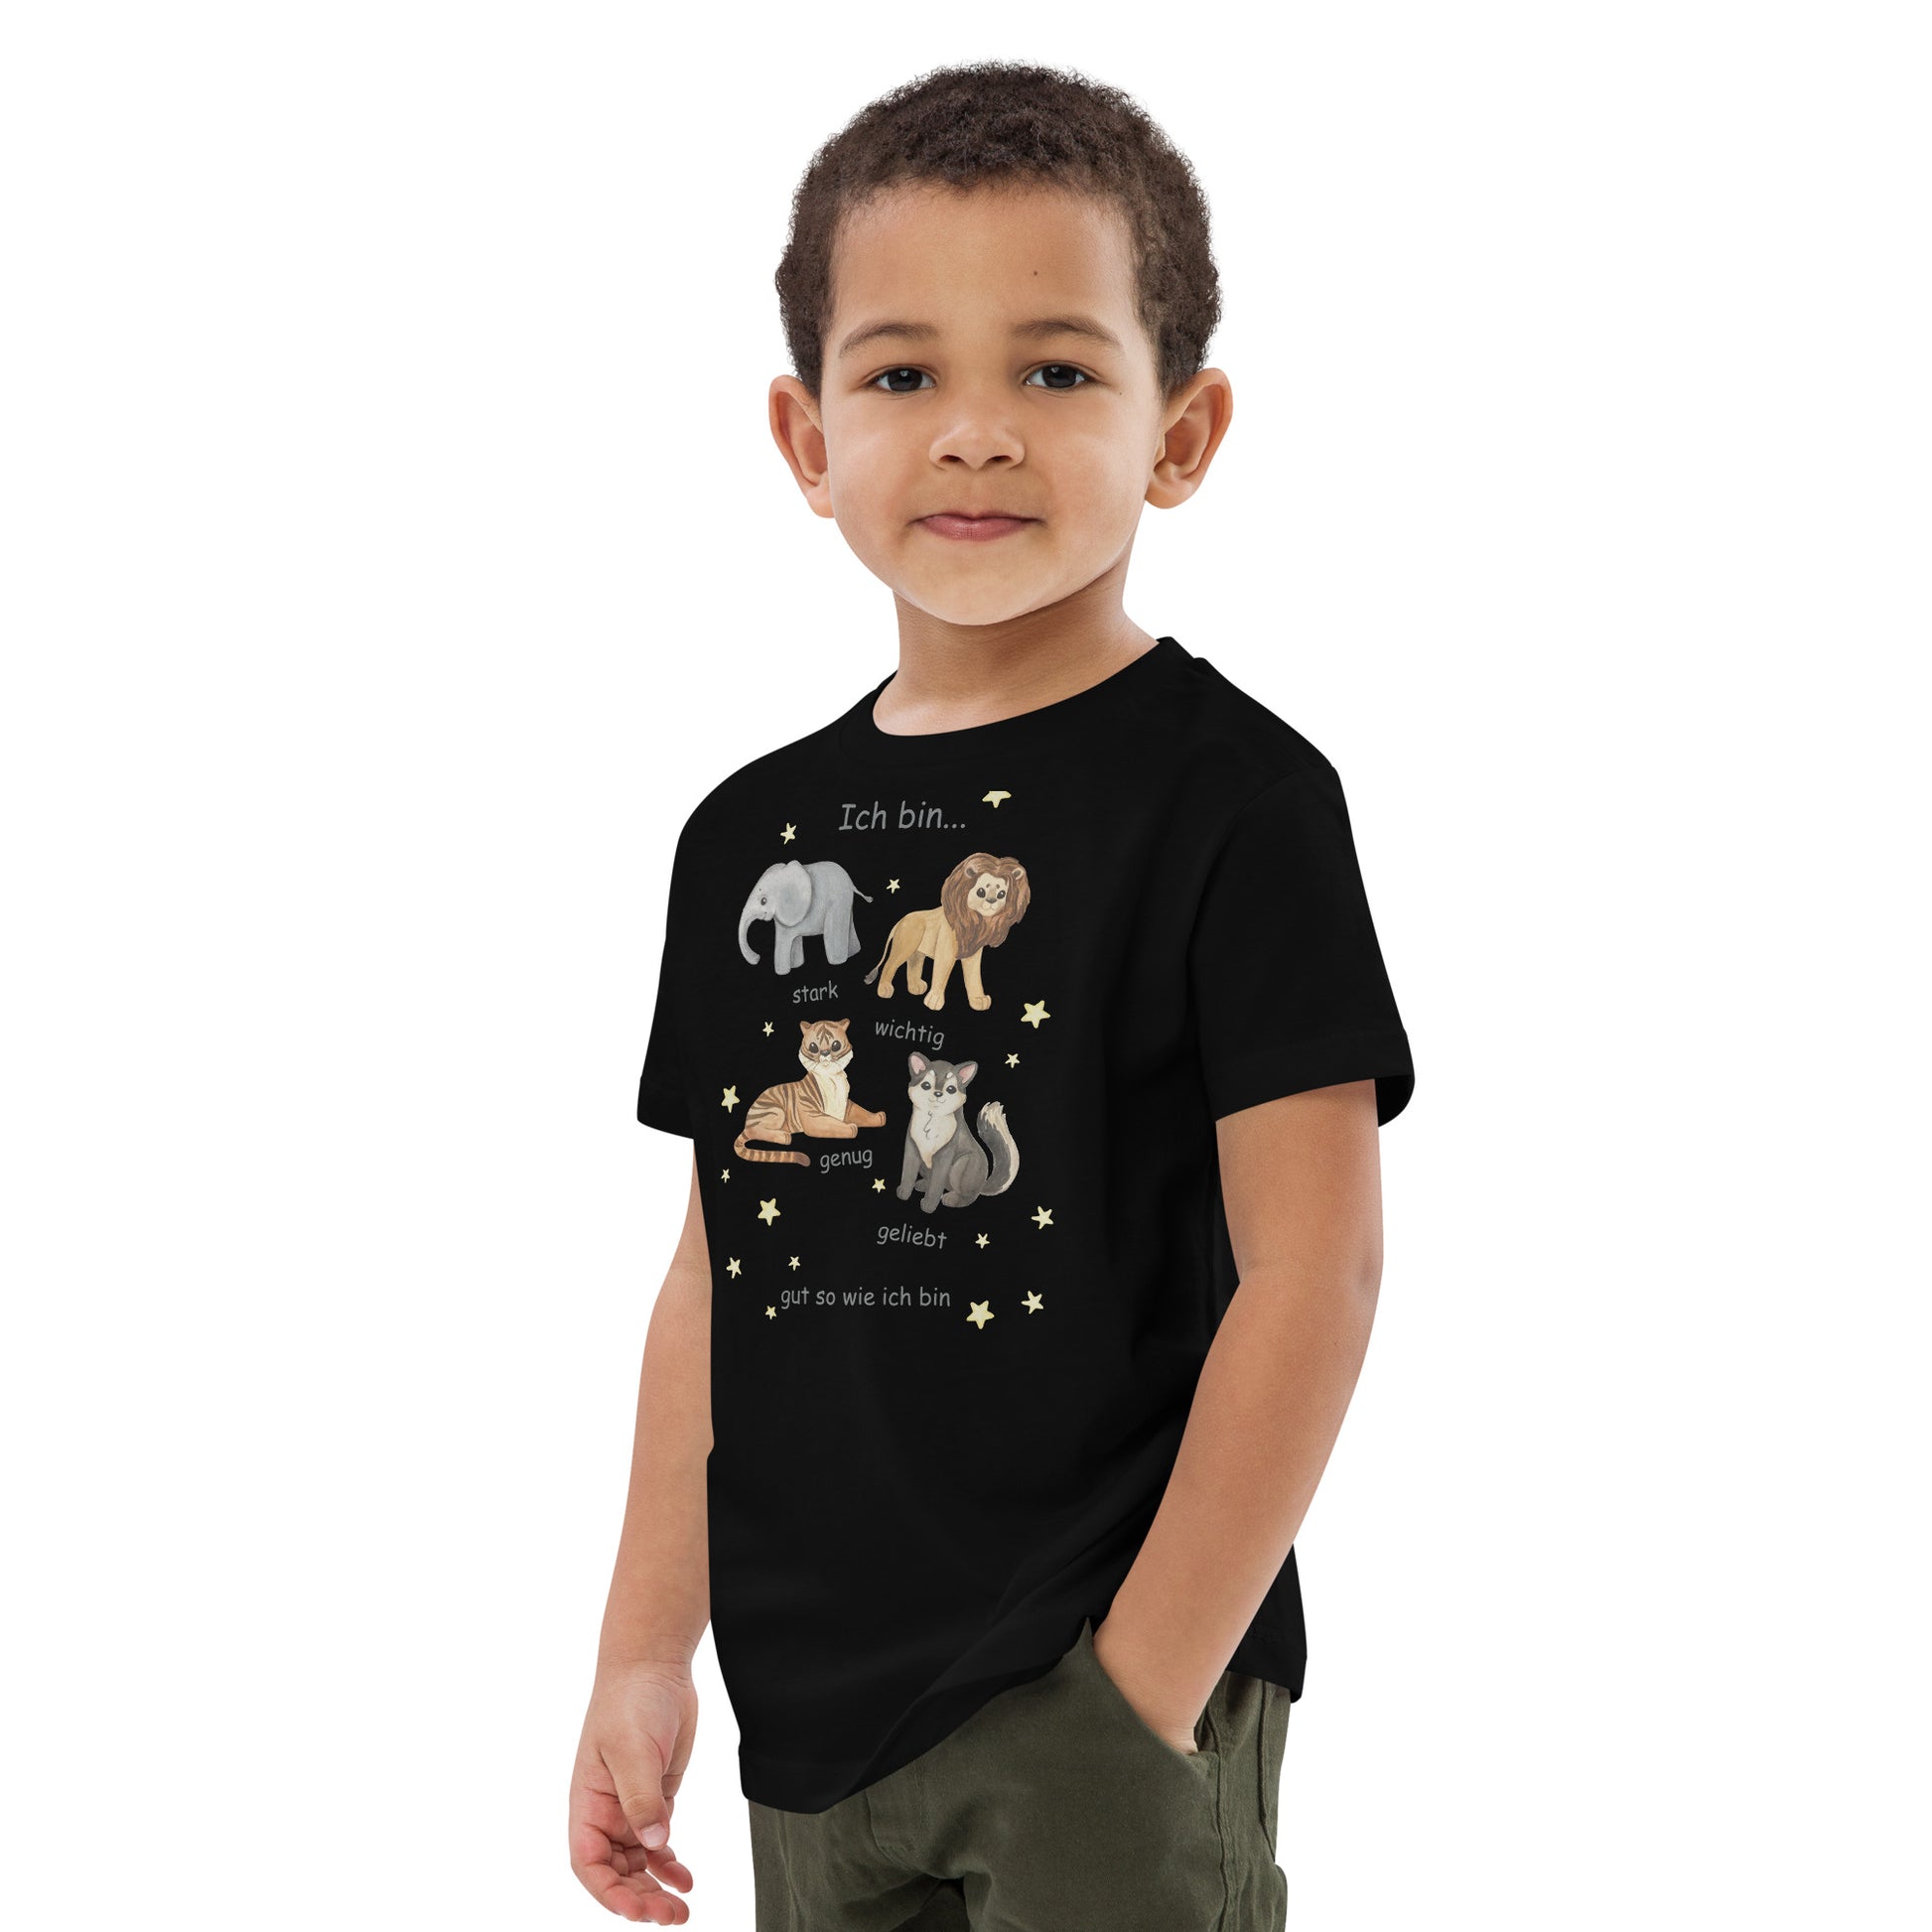 Calm Happy Kids - T-Shirt mit Affirmationen für Kinder (5-14J)